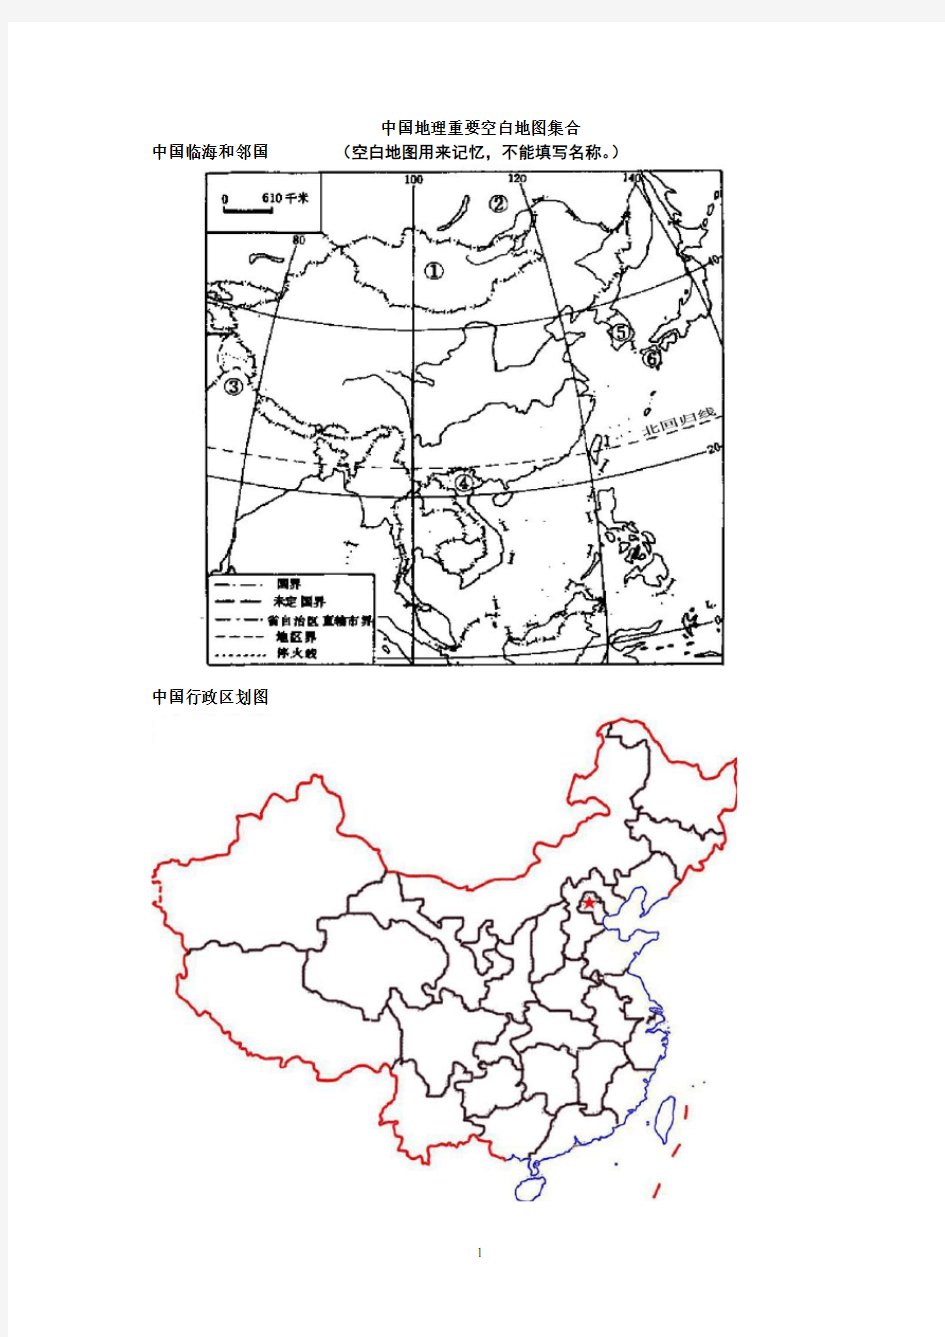 中国地理重要空白地图集合